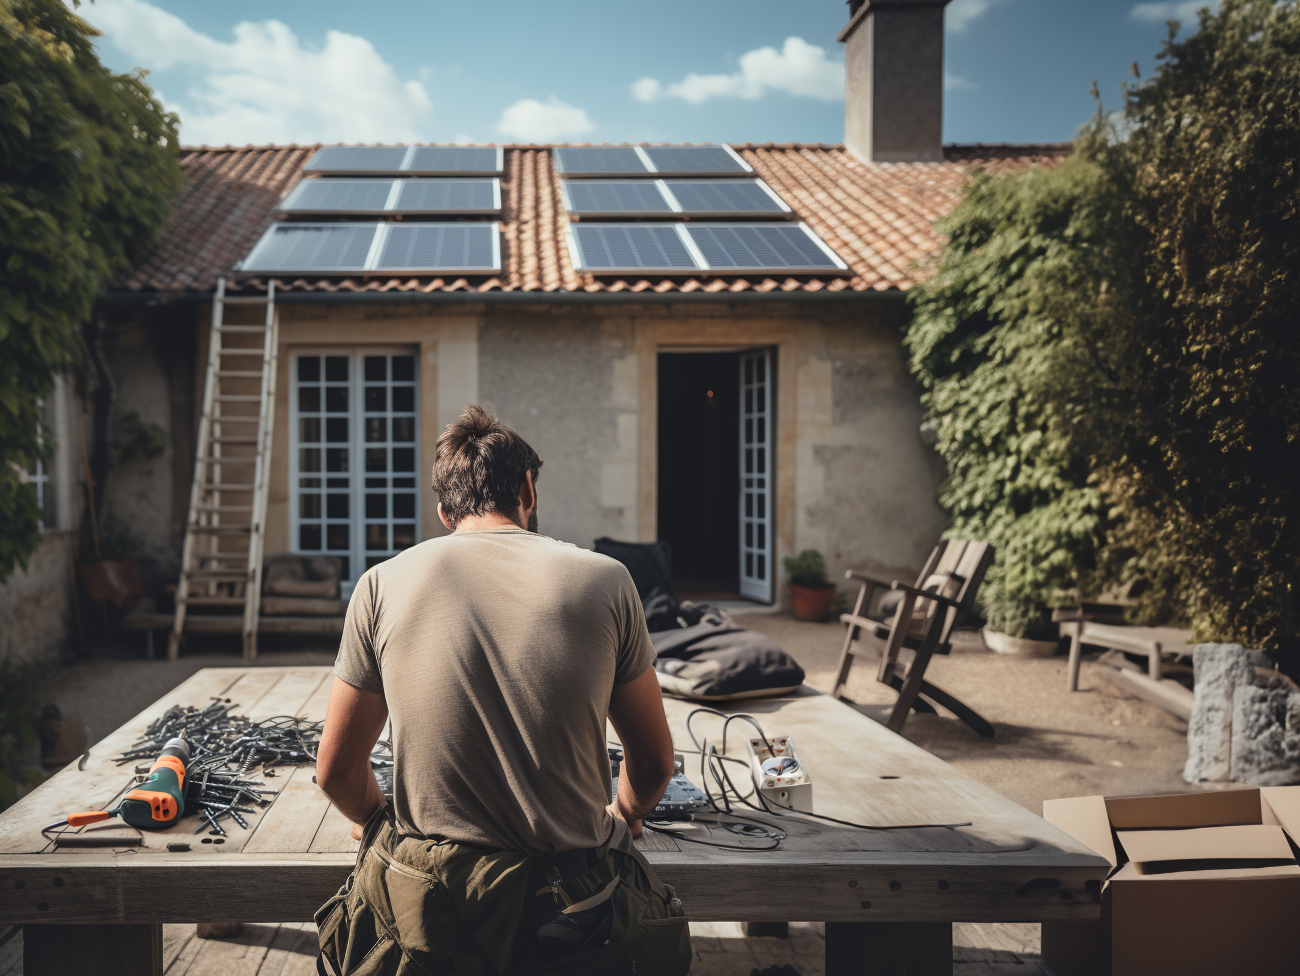 Peut-on installer un kit solaire Plug and Play sur un toit ?